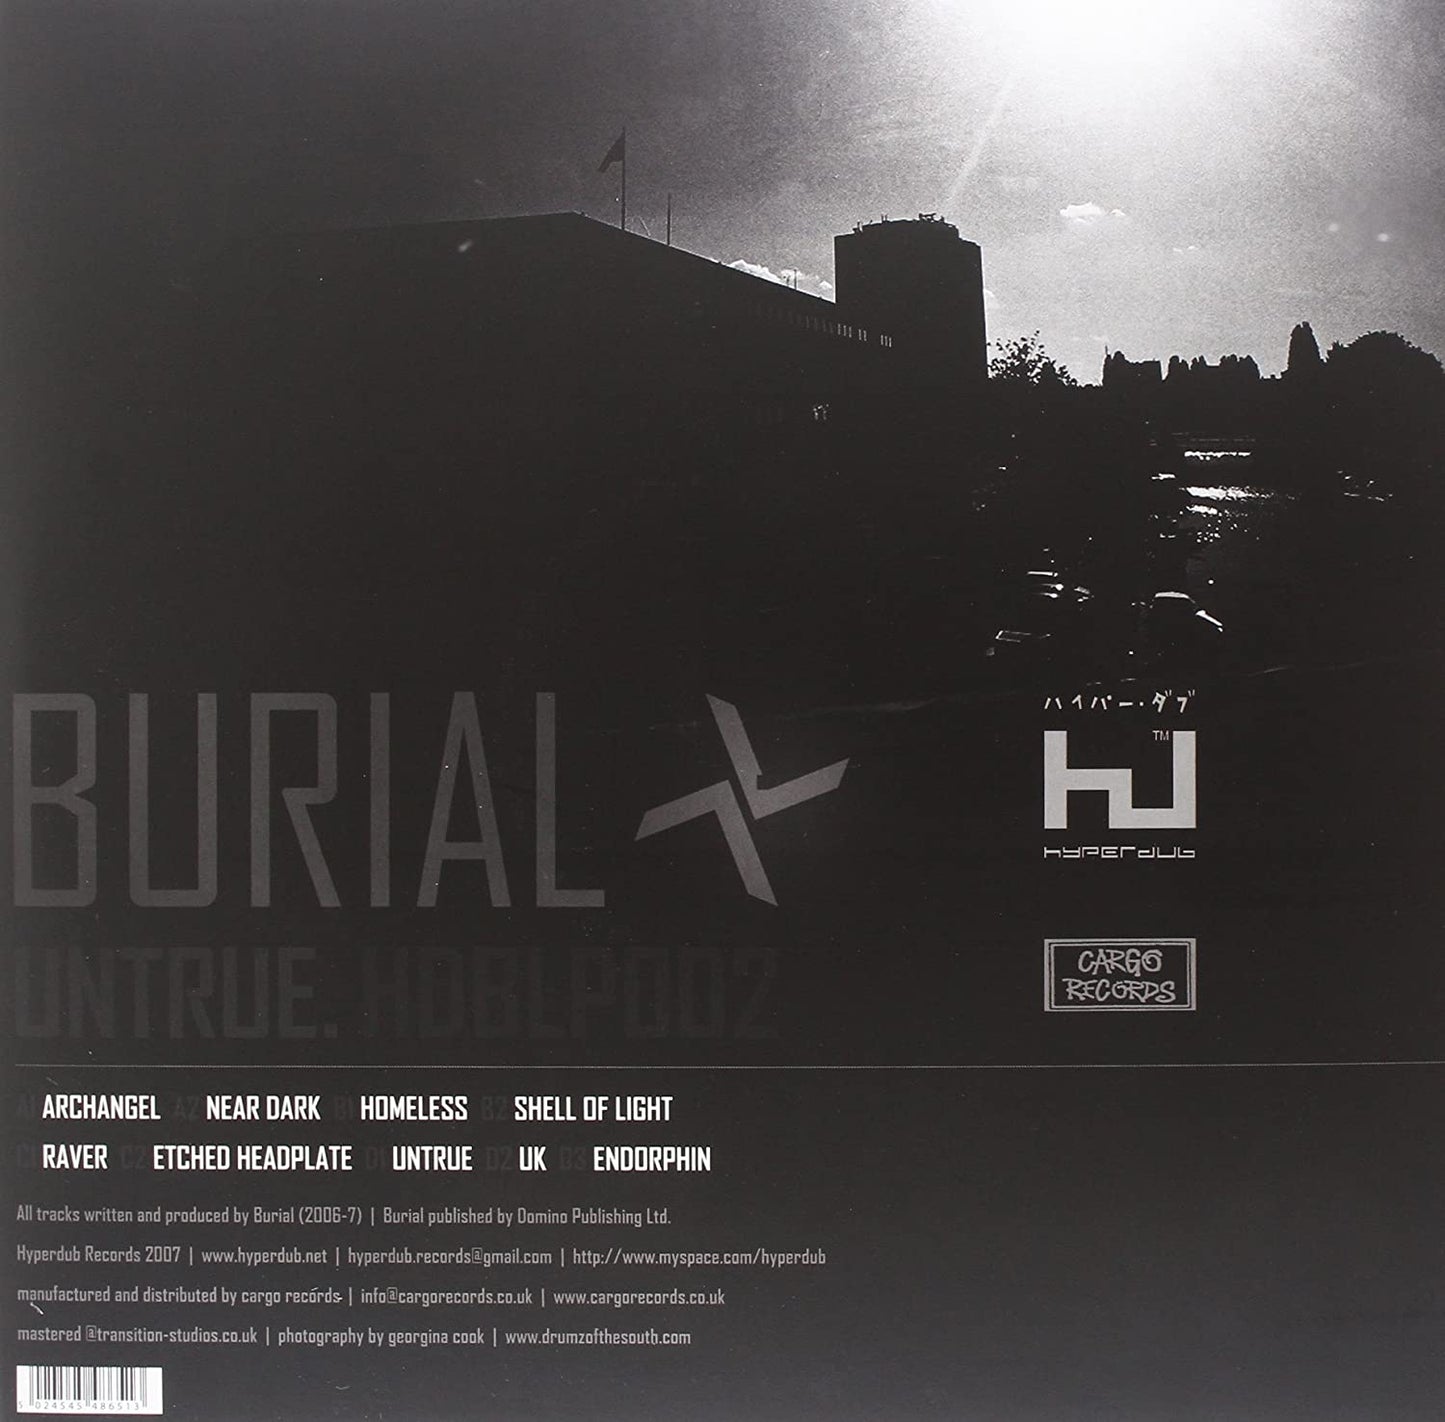 2LP - Burial - Untrue